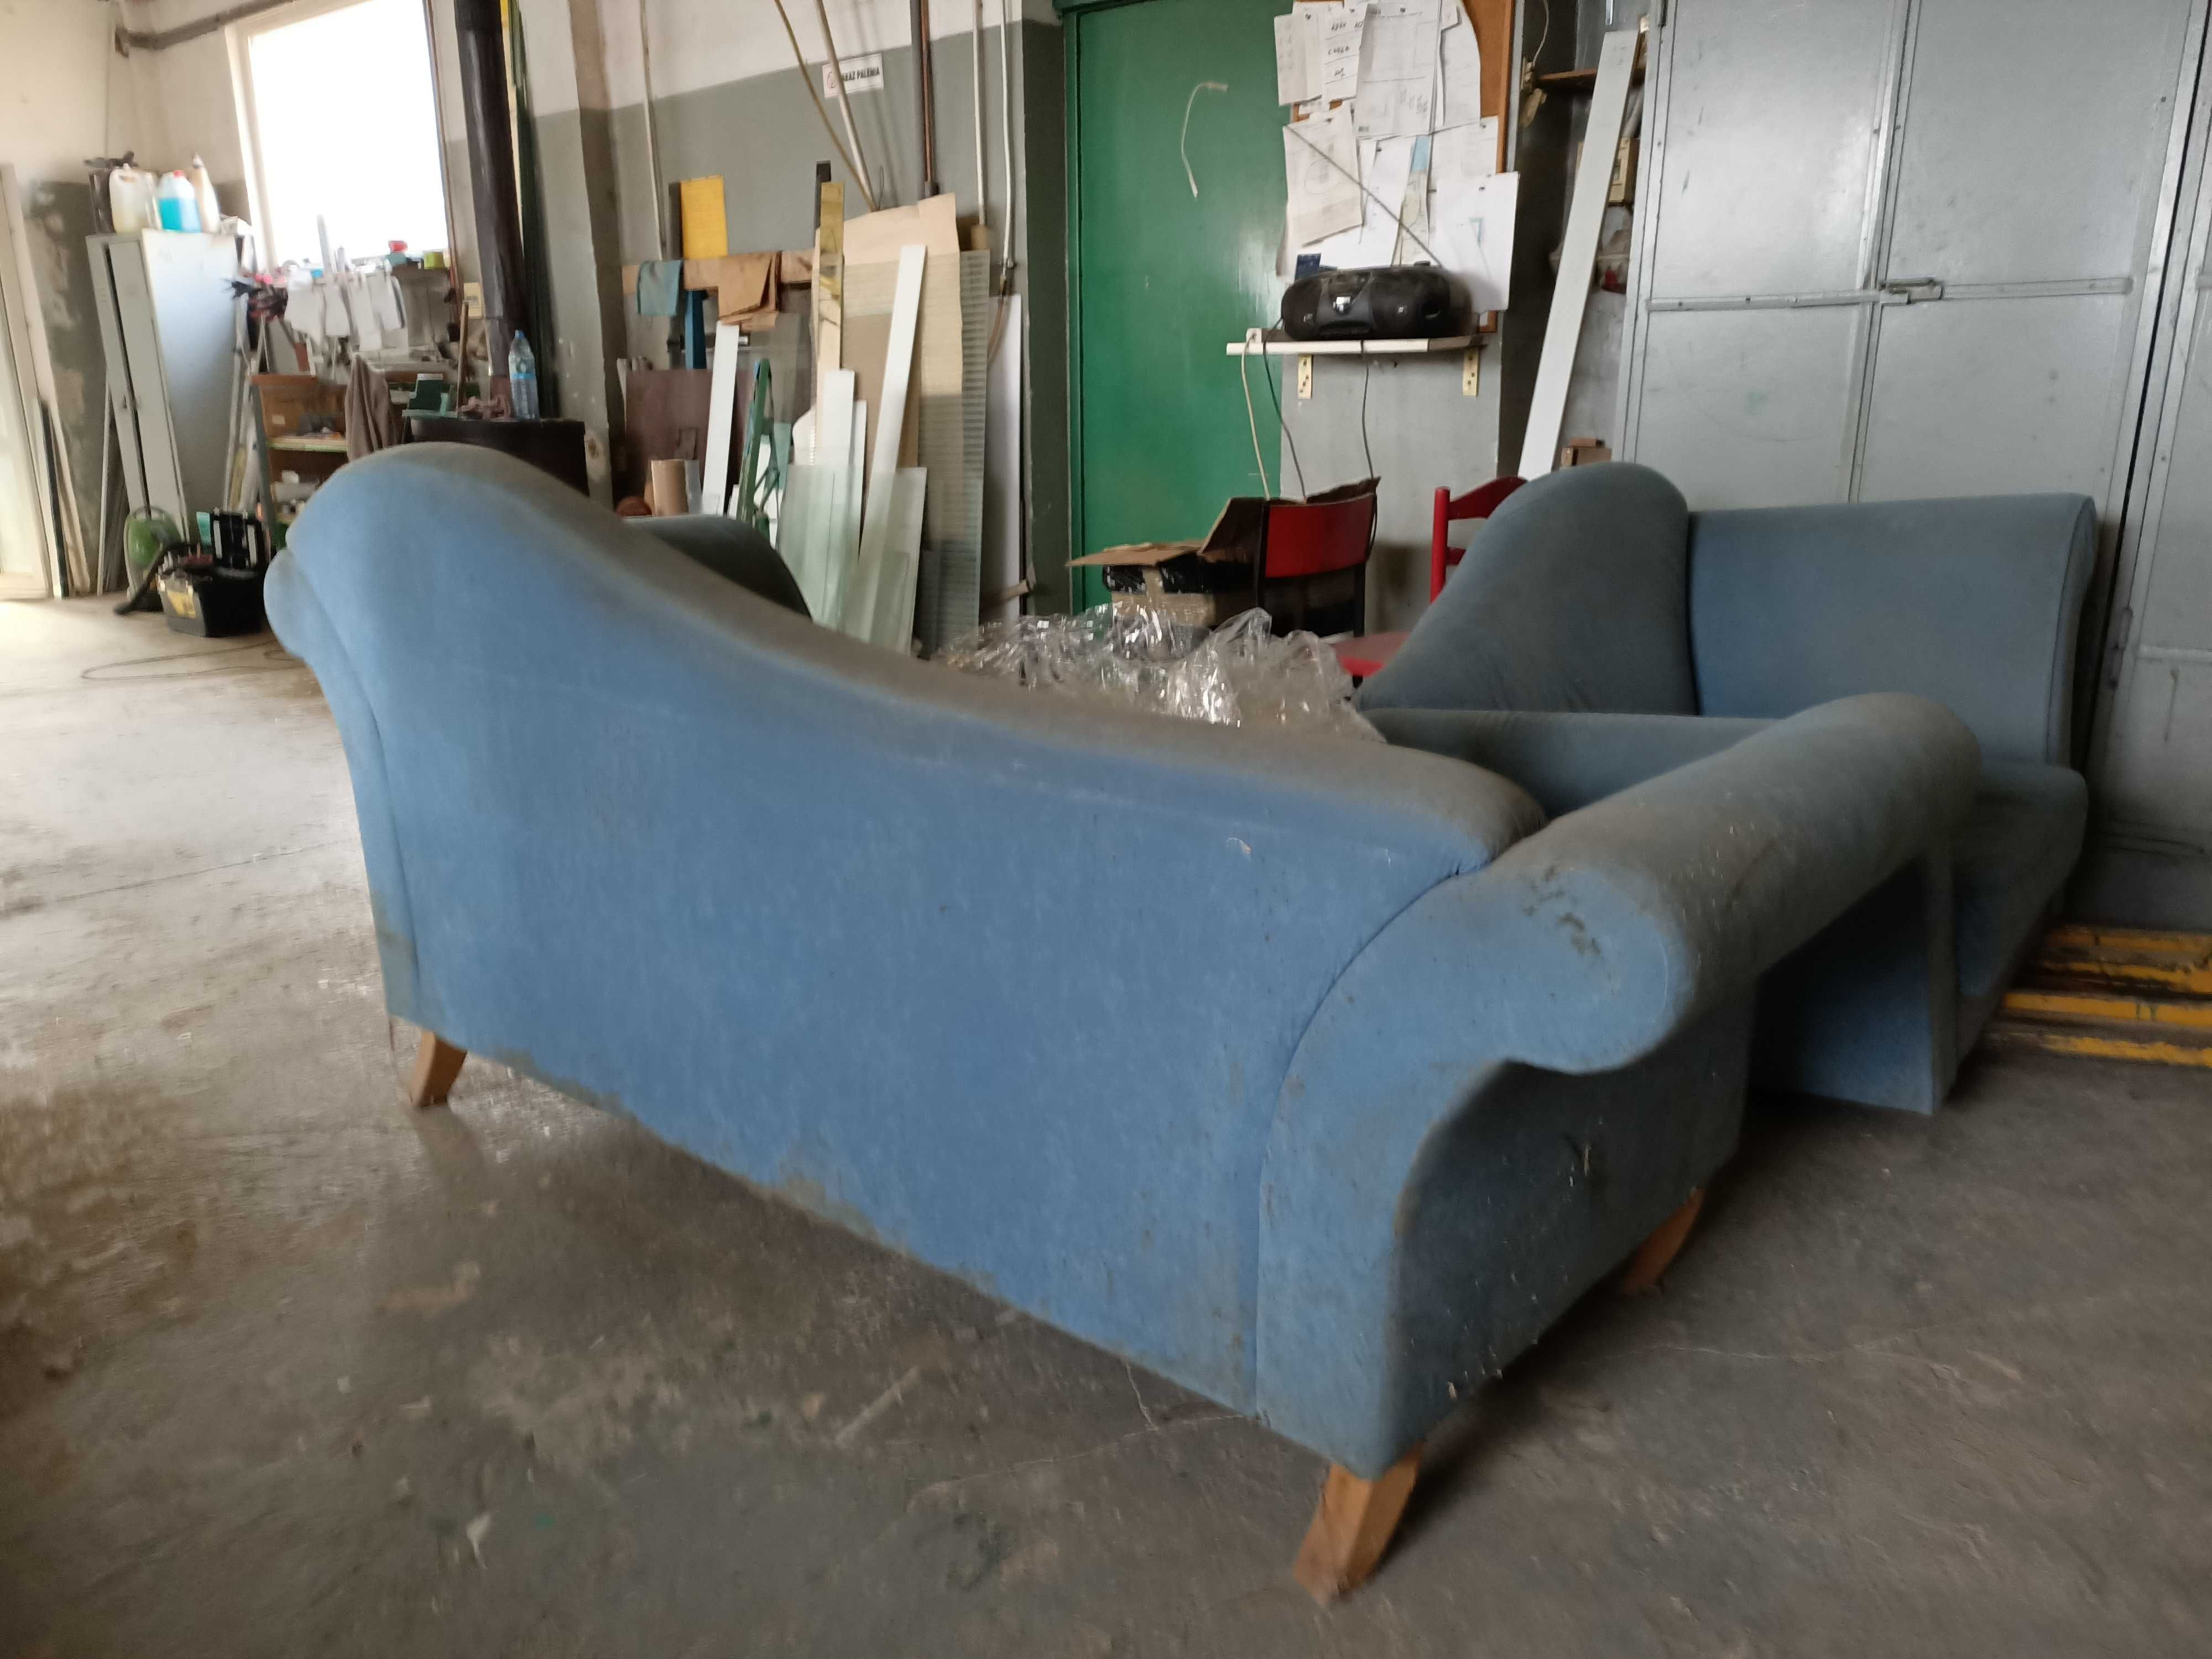 Sofa plus fotel orginalne wzornictwo